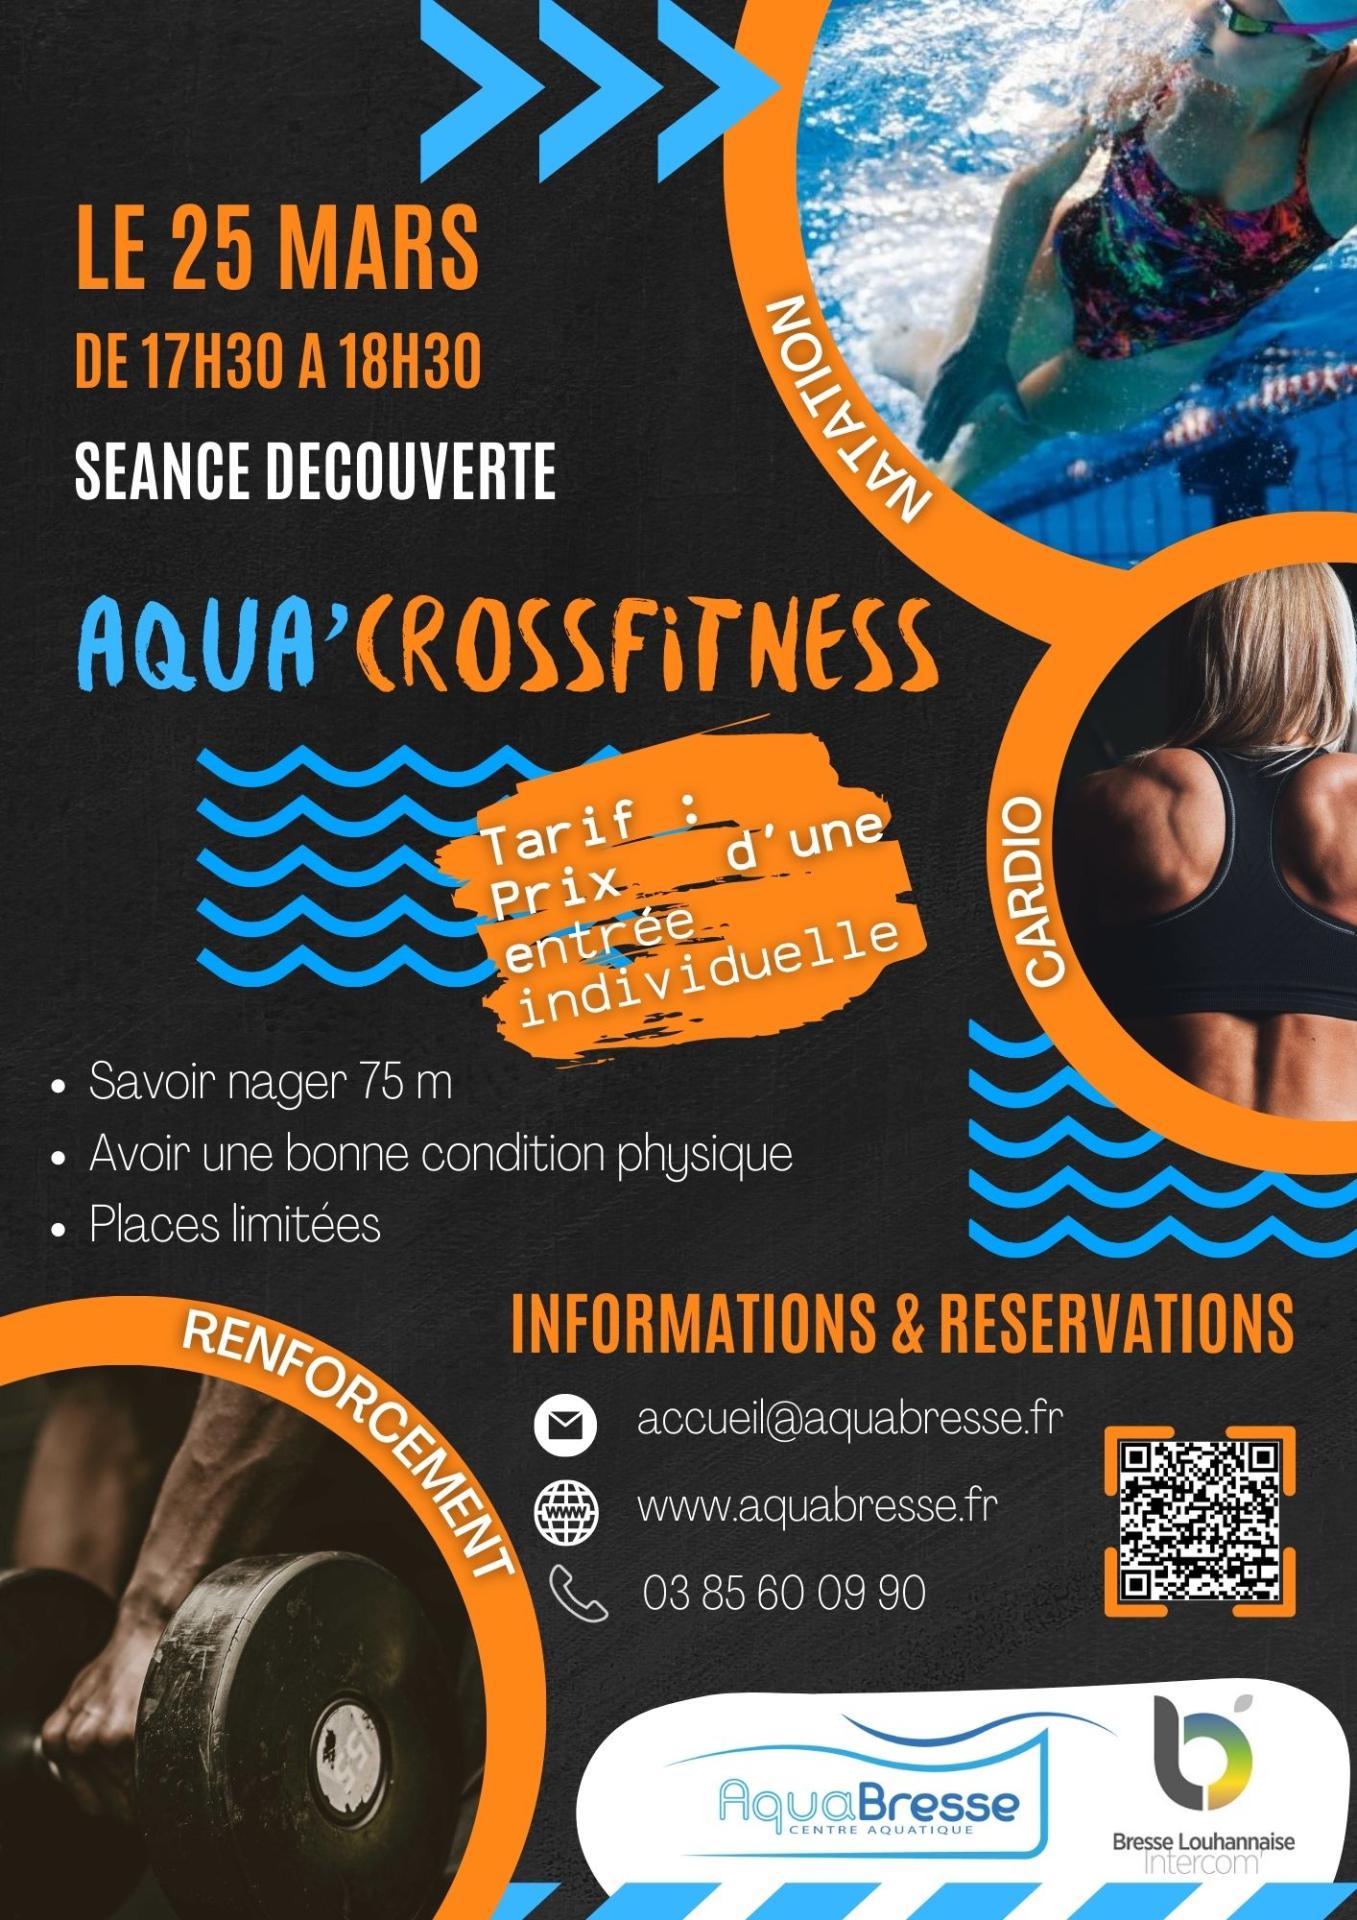 aqua cross fitness